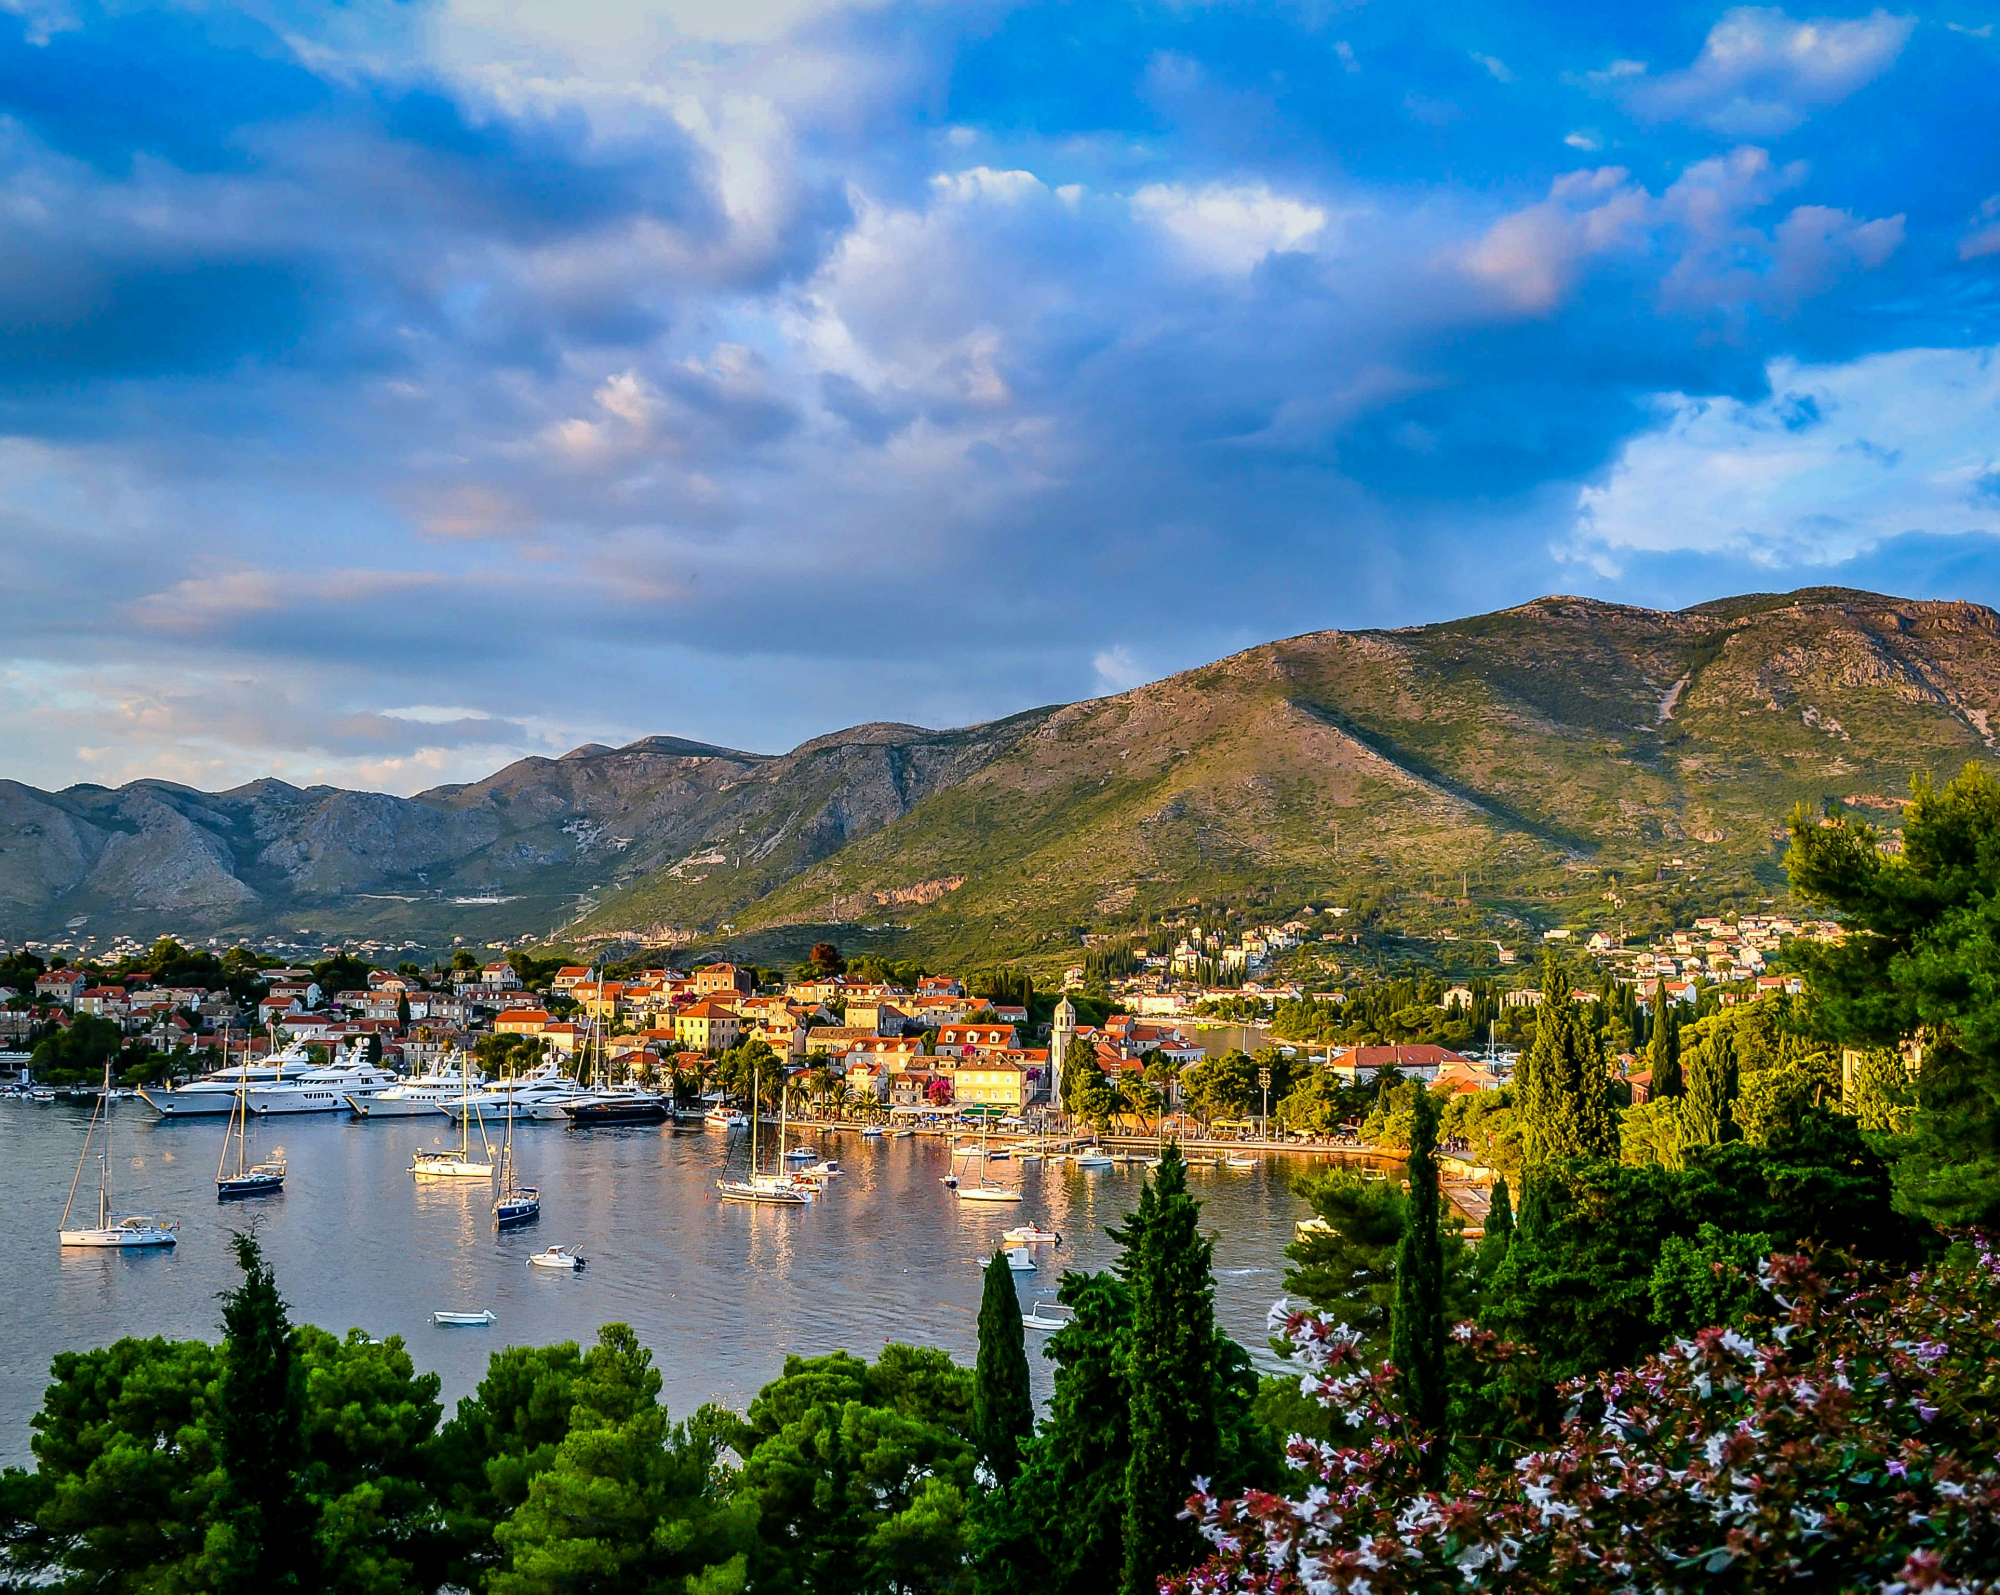 découvrez la beauté de la croatie lors d'un road trip inoubliable à travers ses paysages variés et ses villes pittoresques.